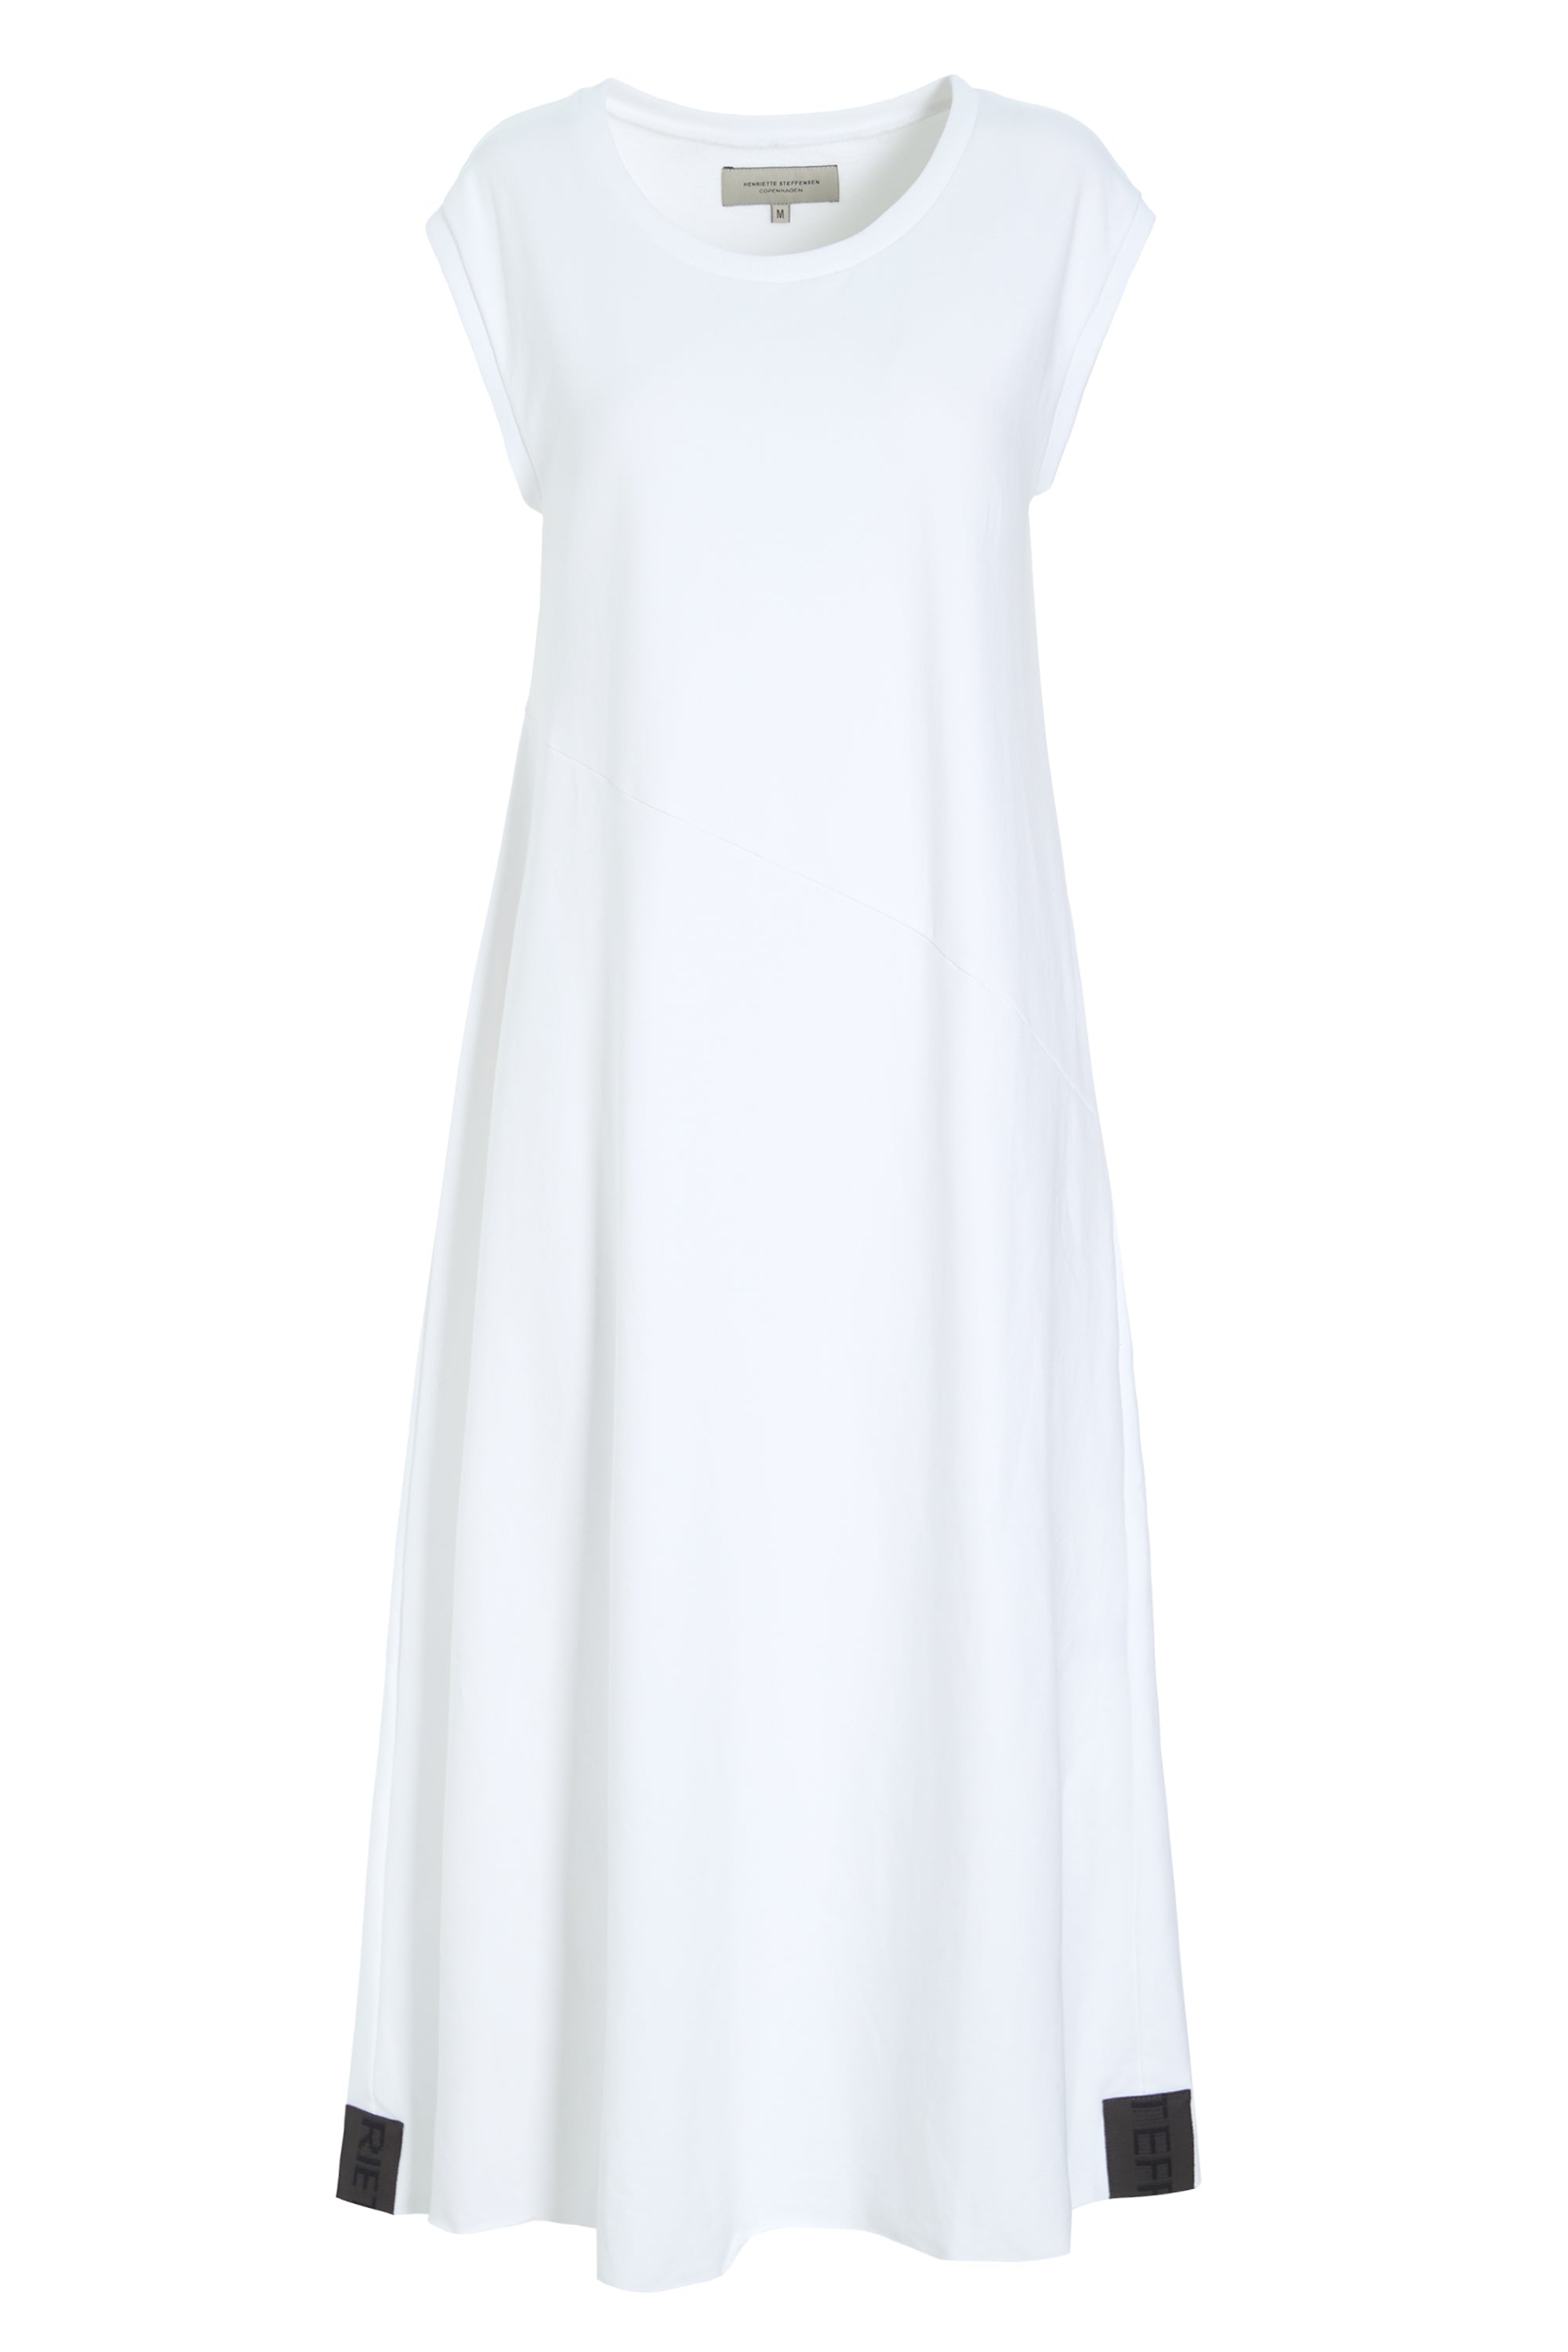 HENRIETTE STEFFENSEN COPENHAGEN SWEAT DRESS - 73405 DRESS cotton WHITE 816